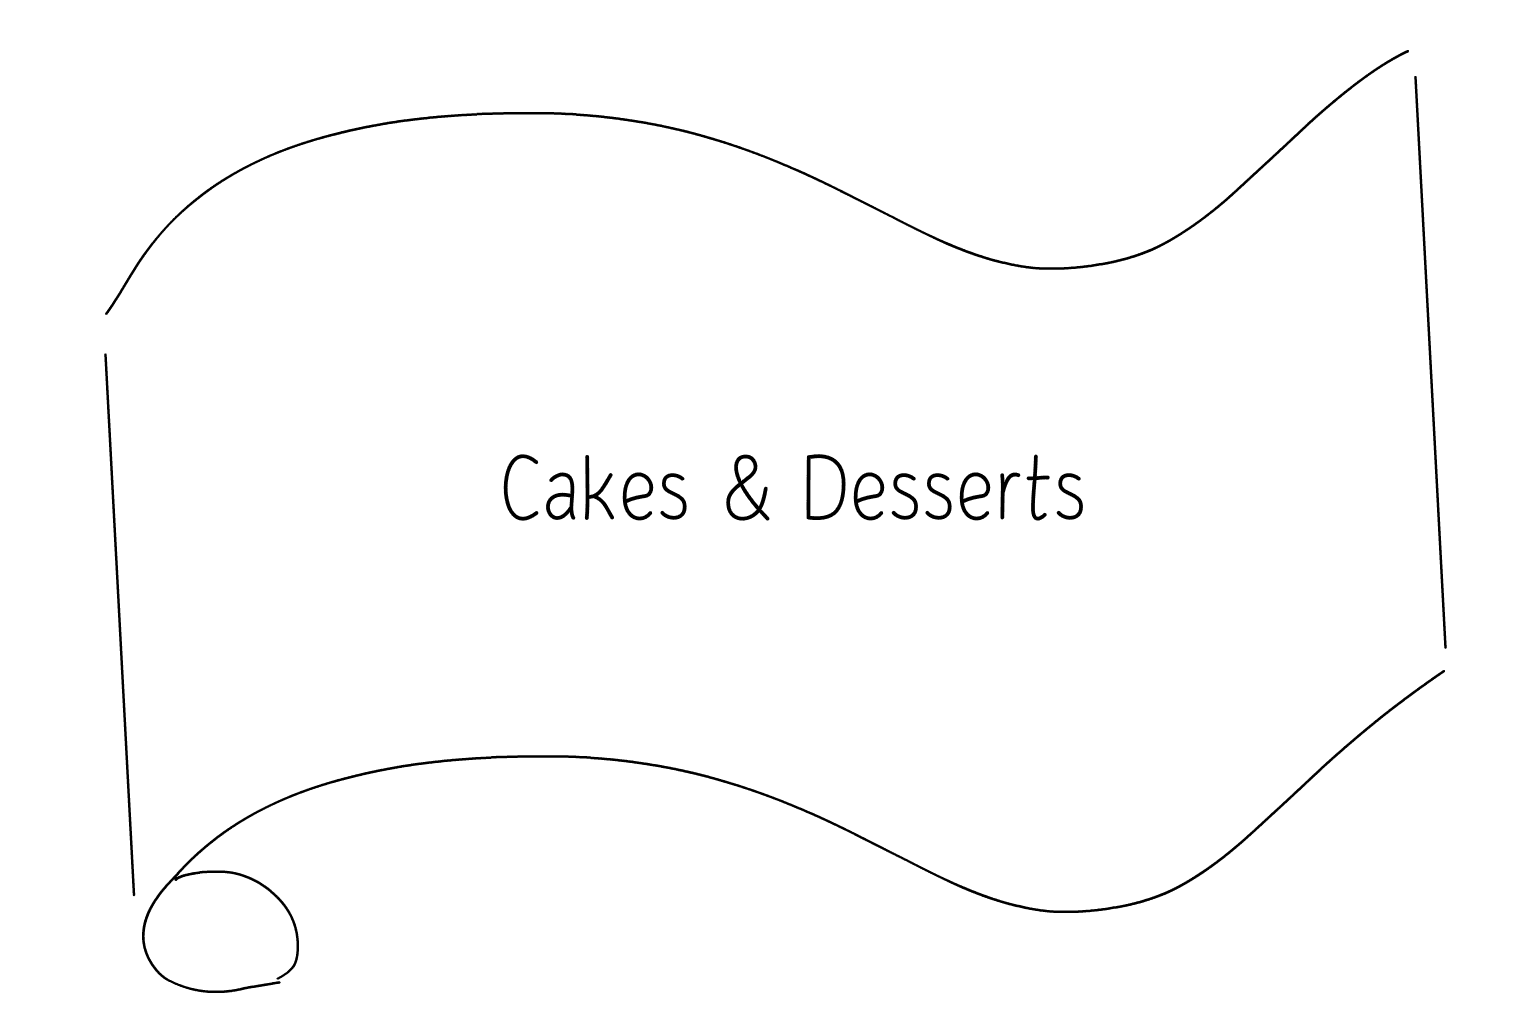 Ilustración de tartas y postres de boda